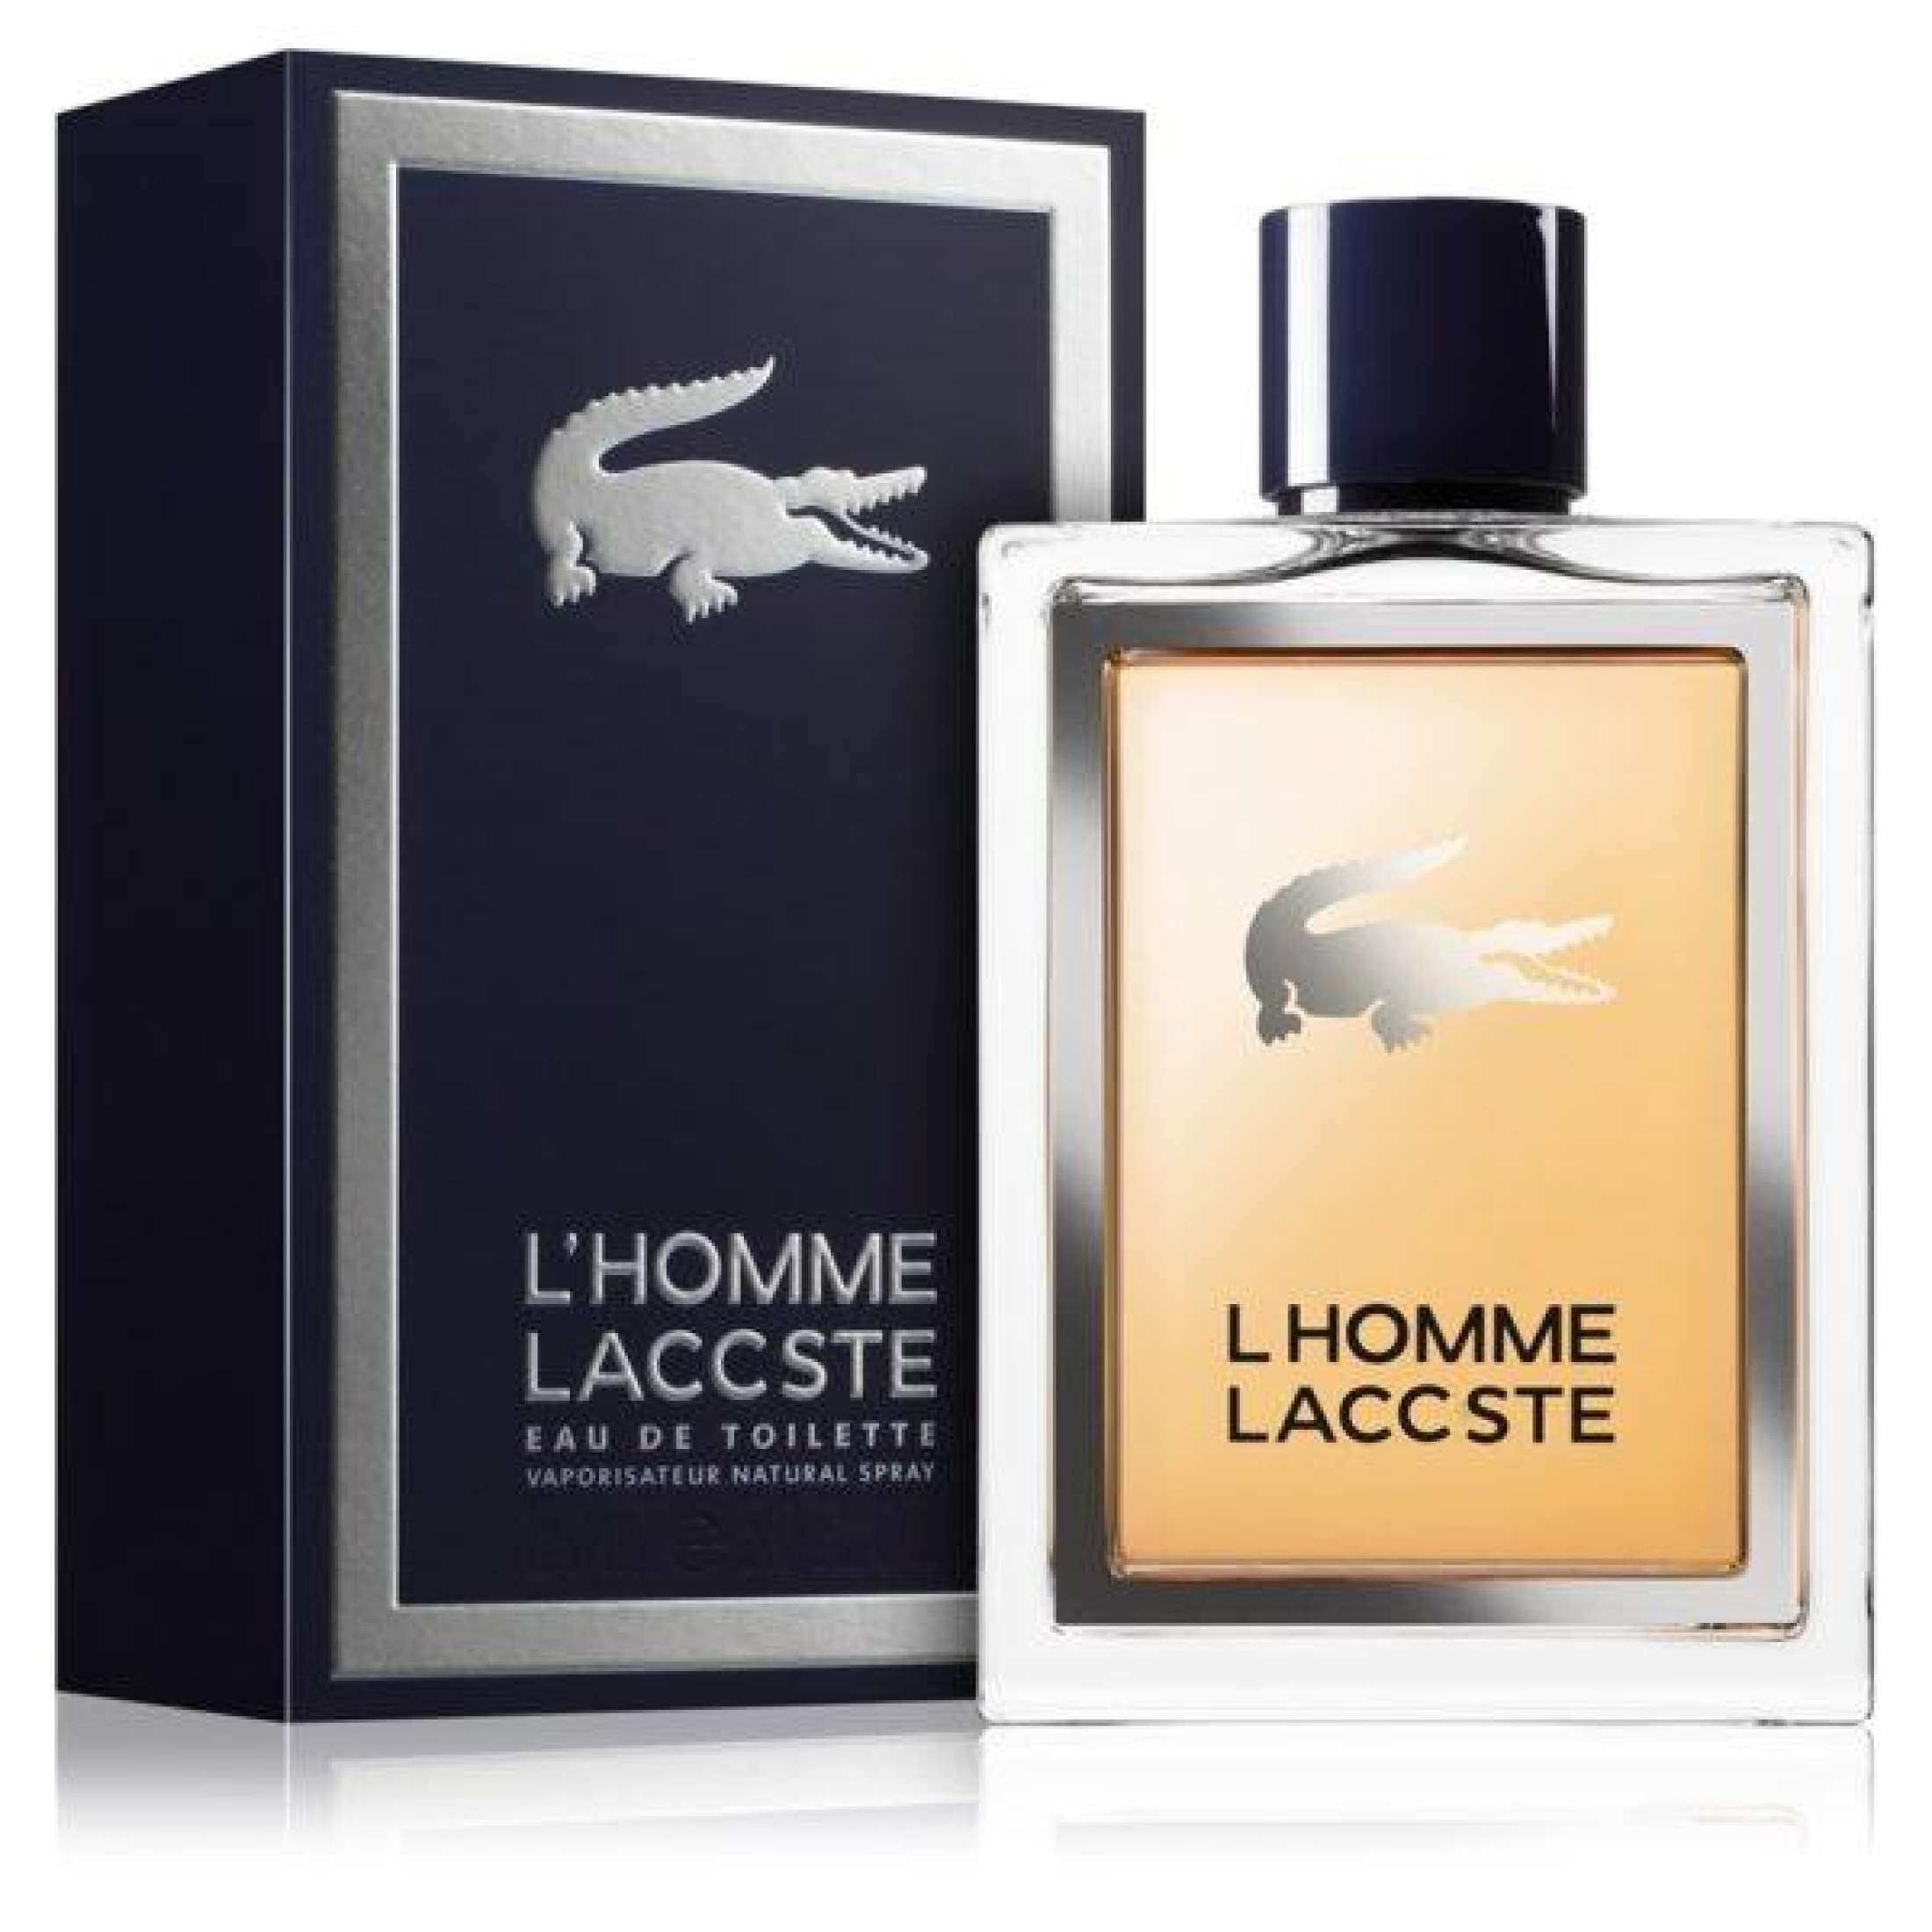 Туалетная вода мужская Lacoste l homme. L'homme Lacoste мужской 100 мл. Lacoste l homme intense EDT 100 ml. Lacoste l`homme 50ml EDT.